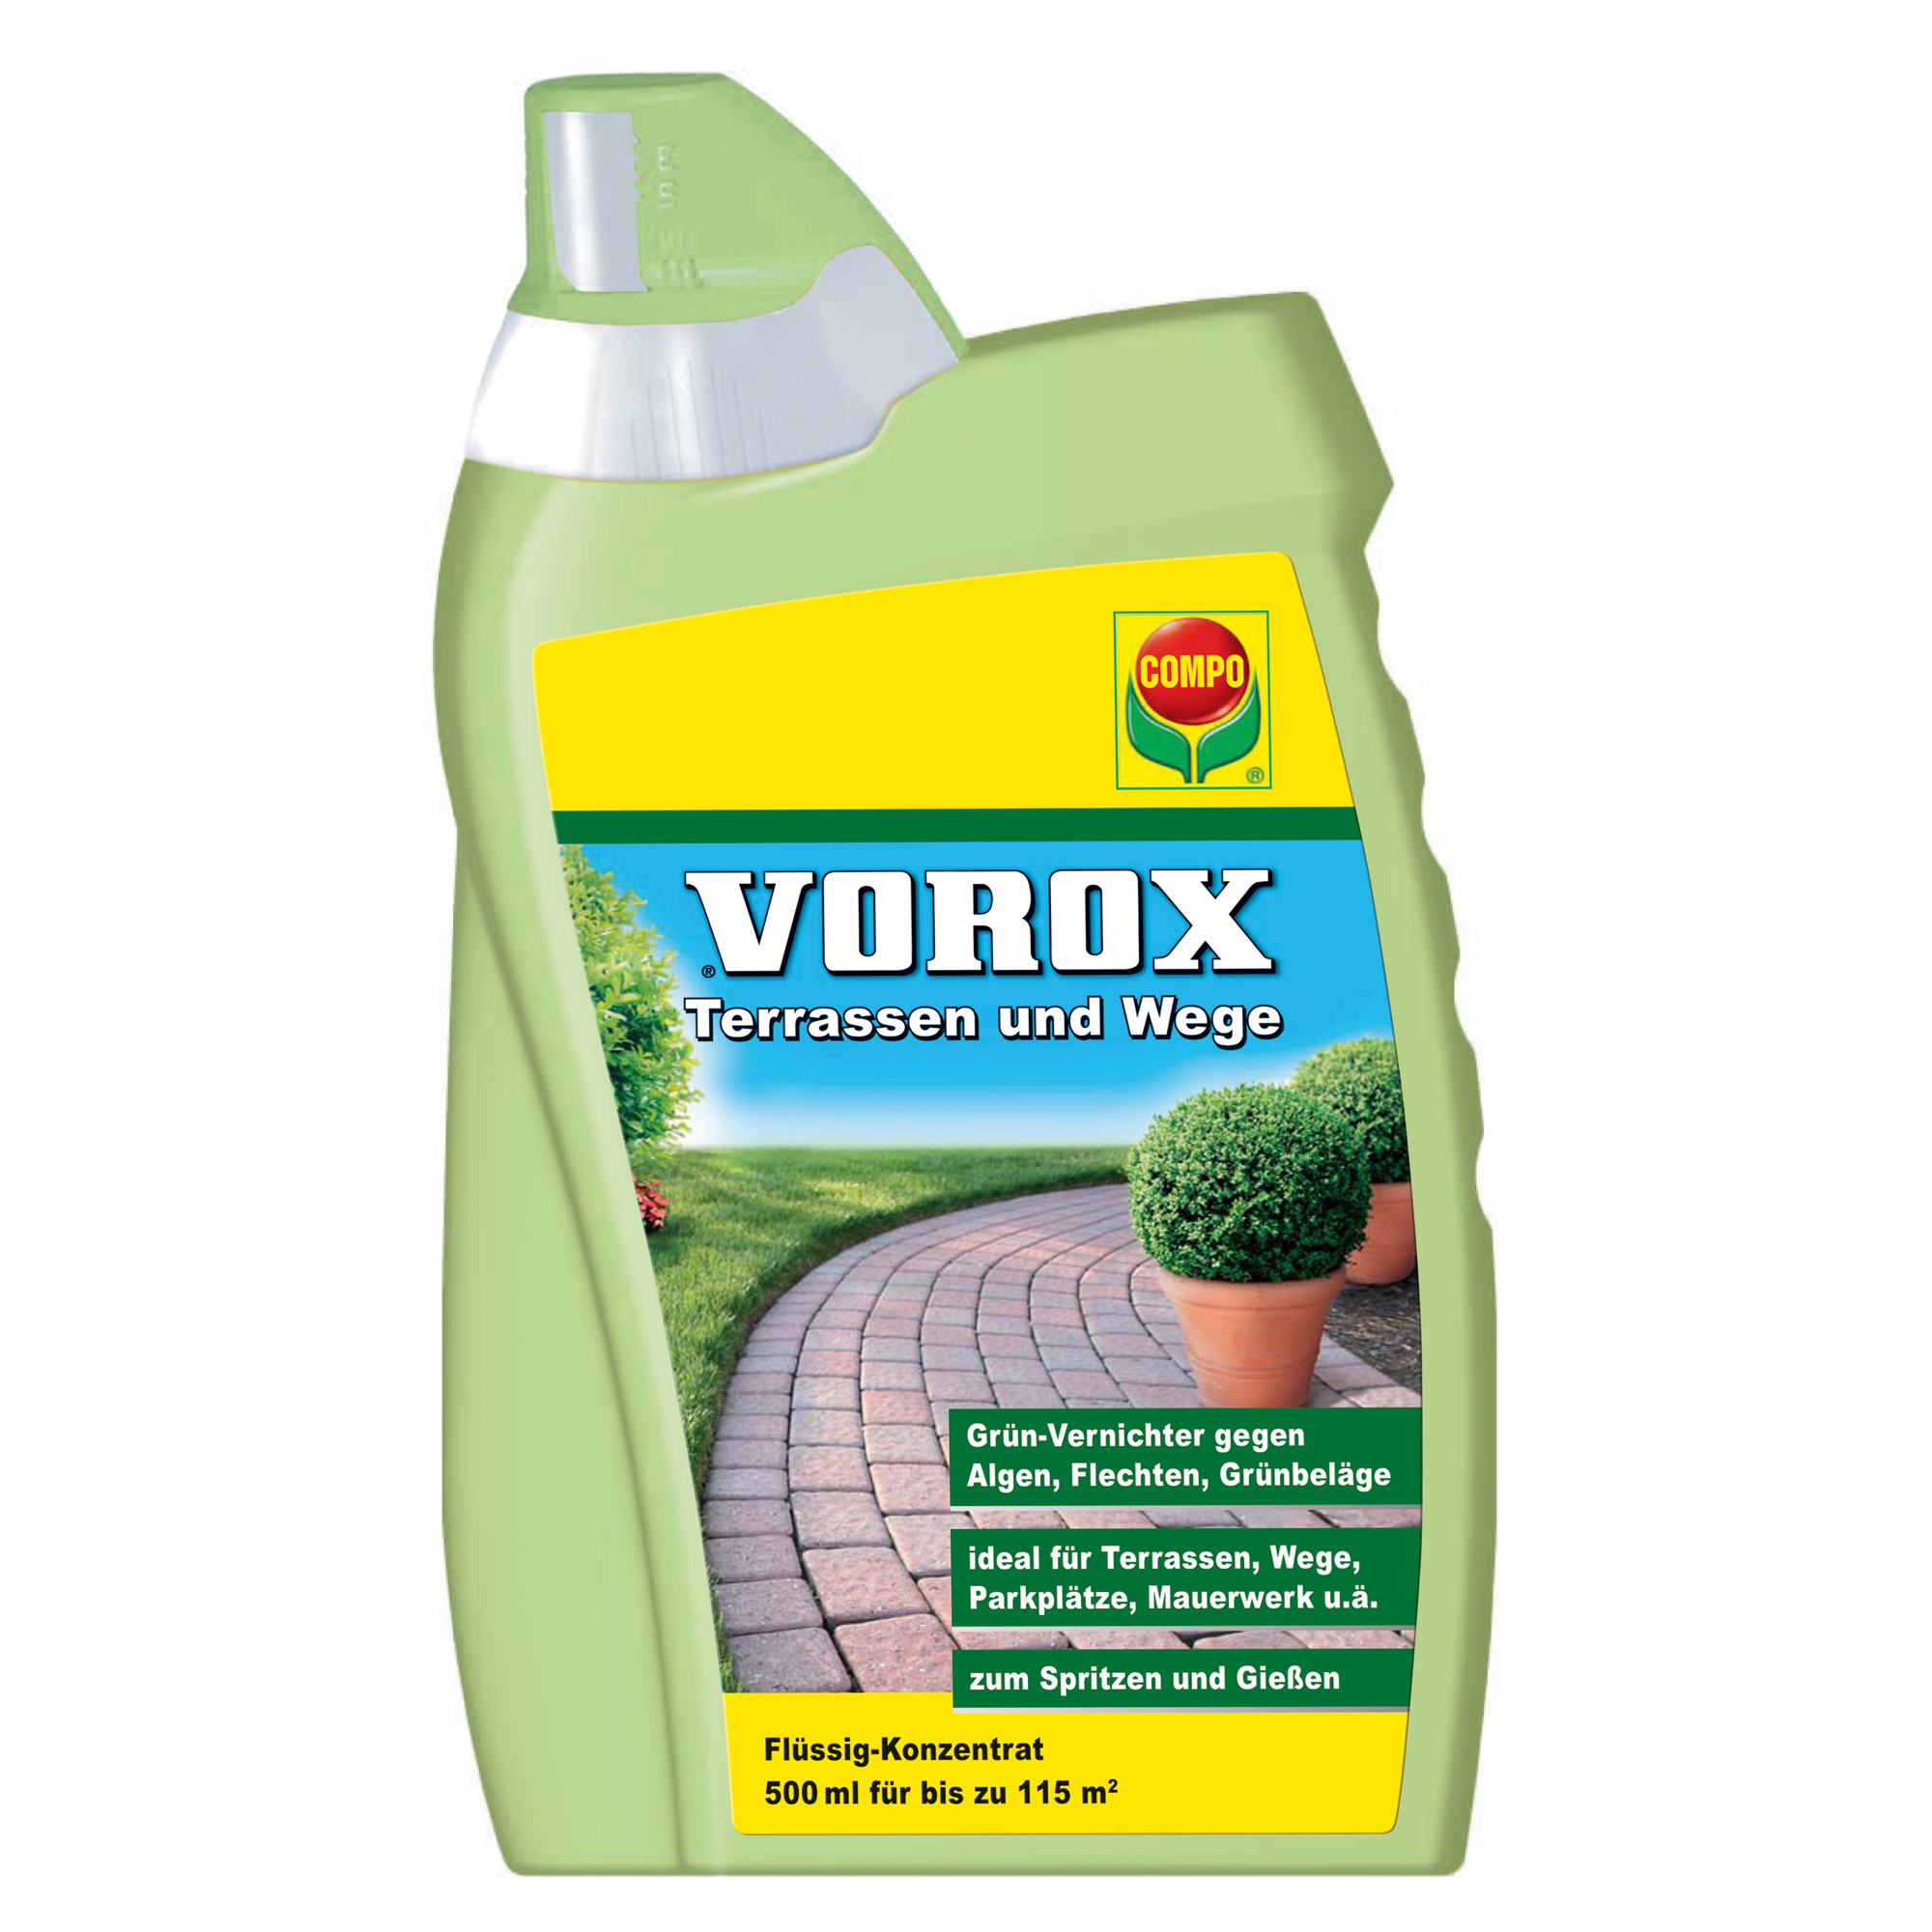 Vorox® Terrassen und Wege 500 ml + product picture